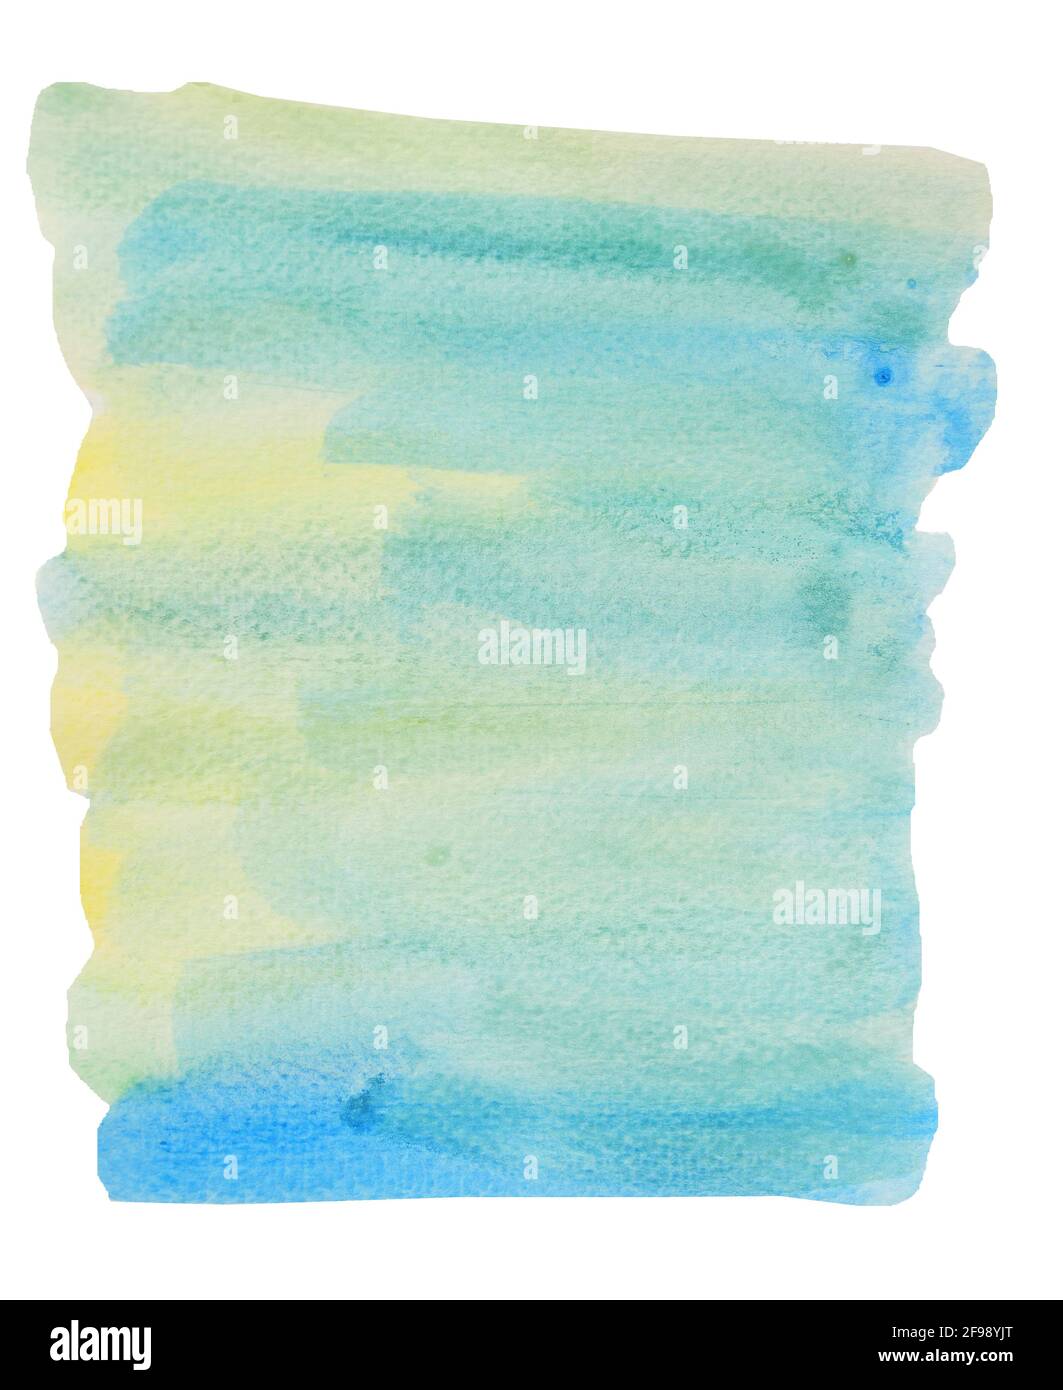 Disegno astratto blu con colore verde e giallo isolato su sfondo bianco , Illustrazione acquerello disegno a mano e dipinto su carta Foto Stock